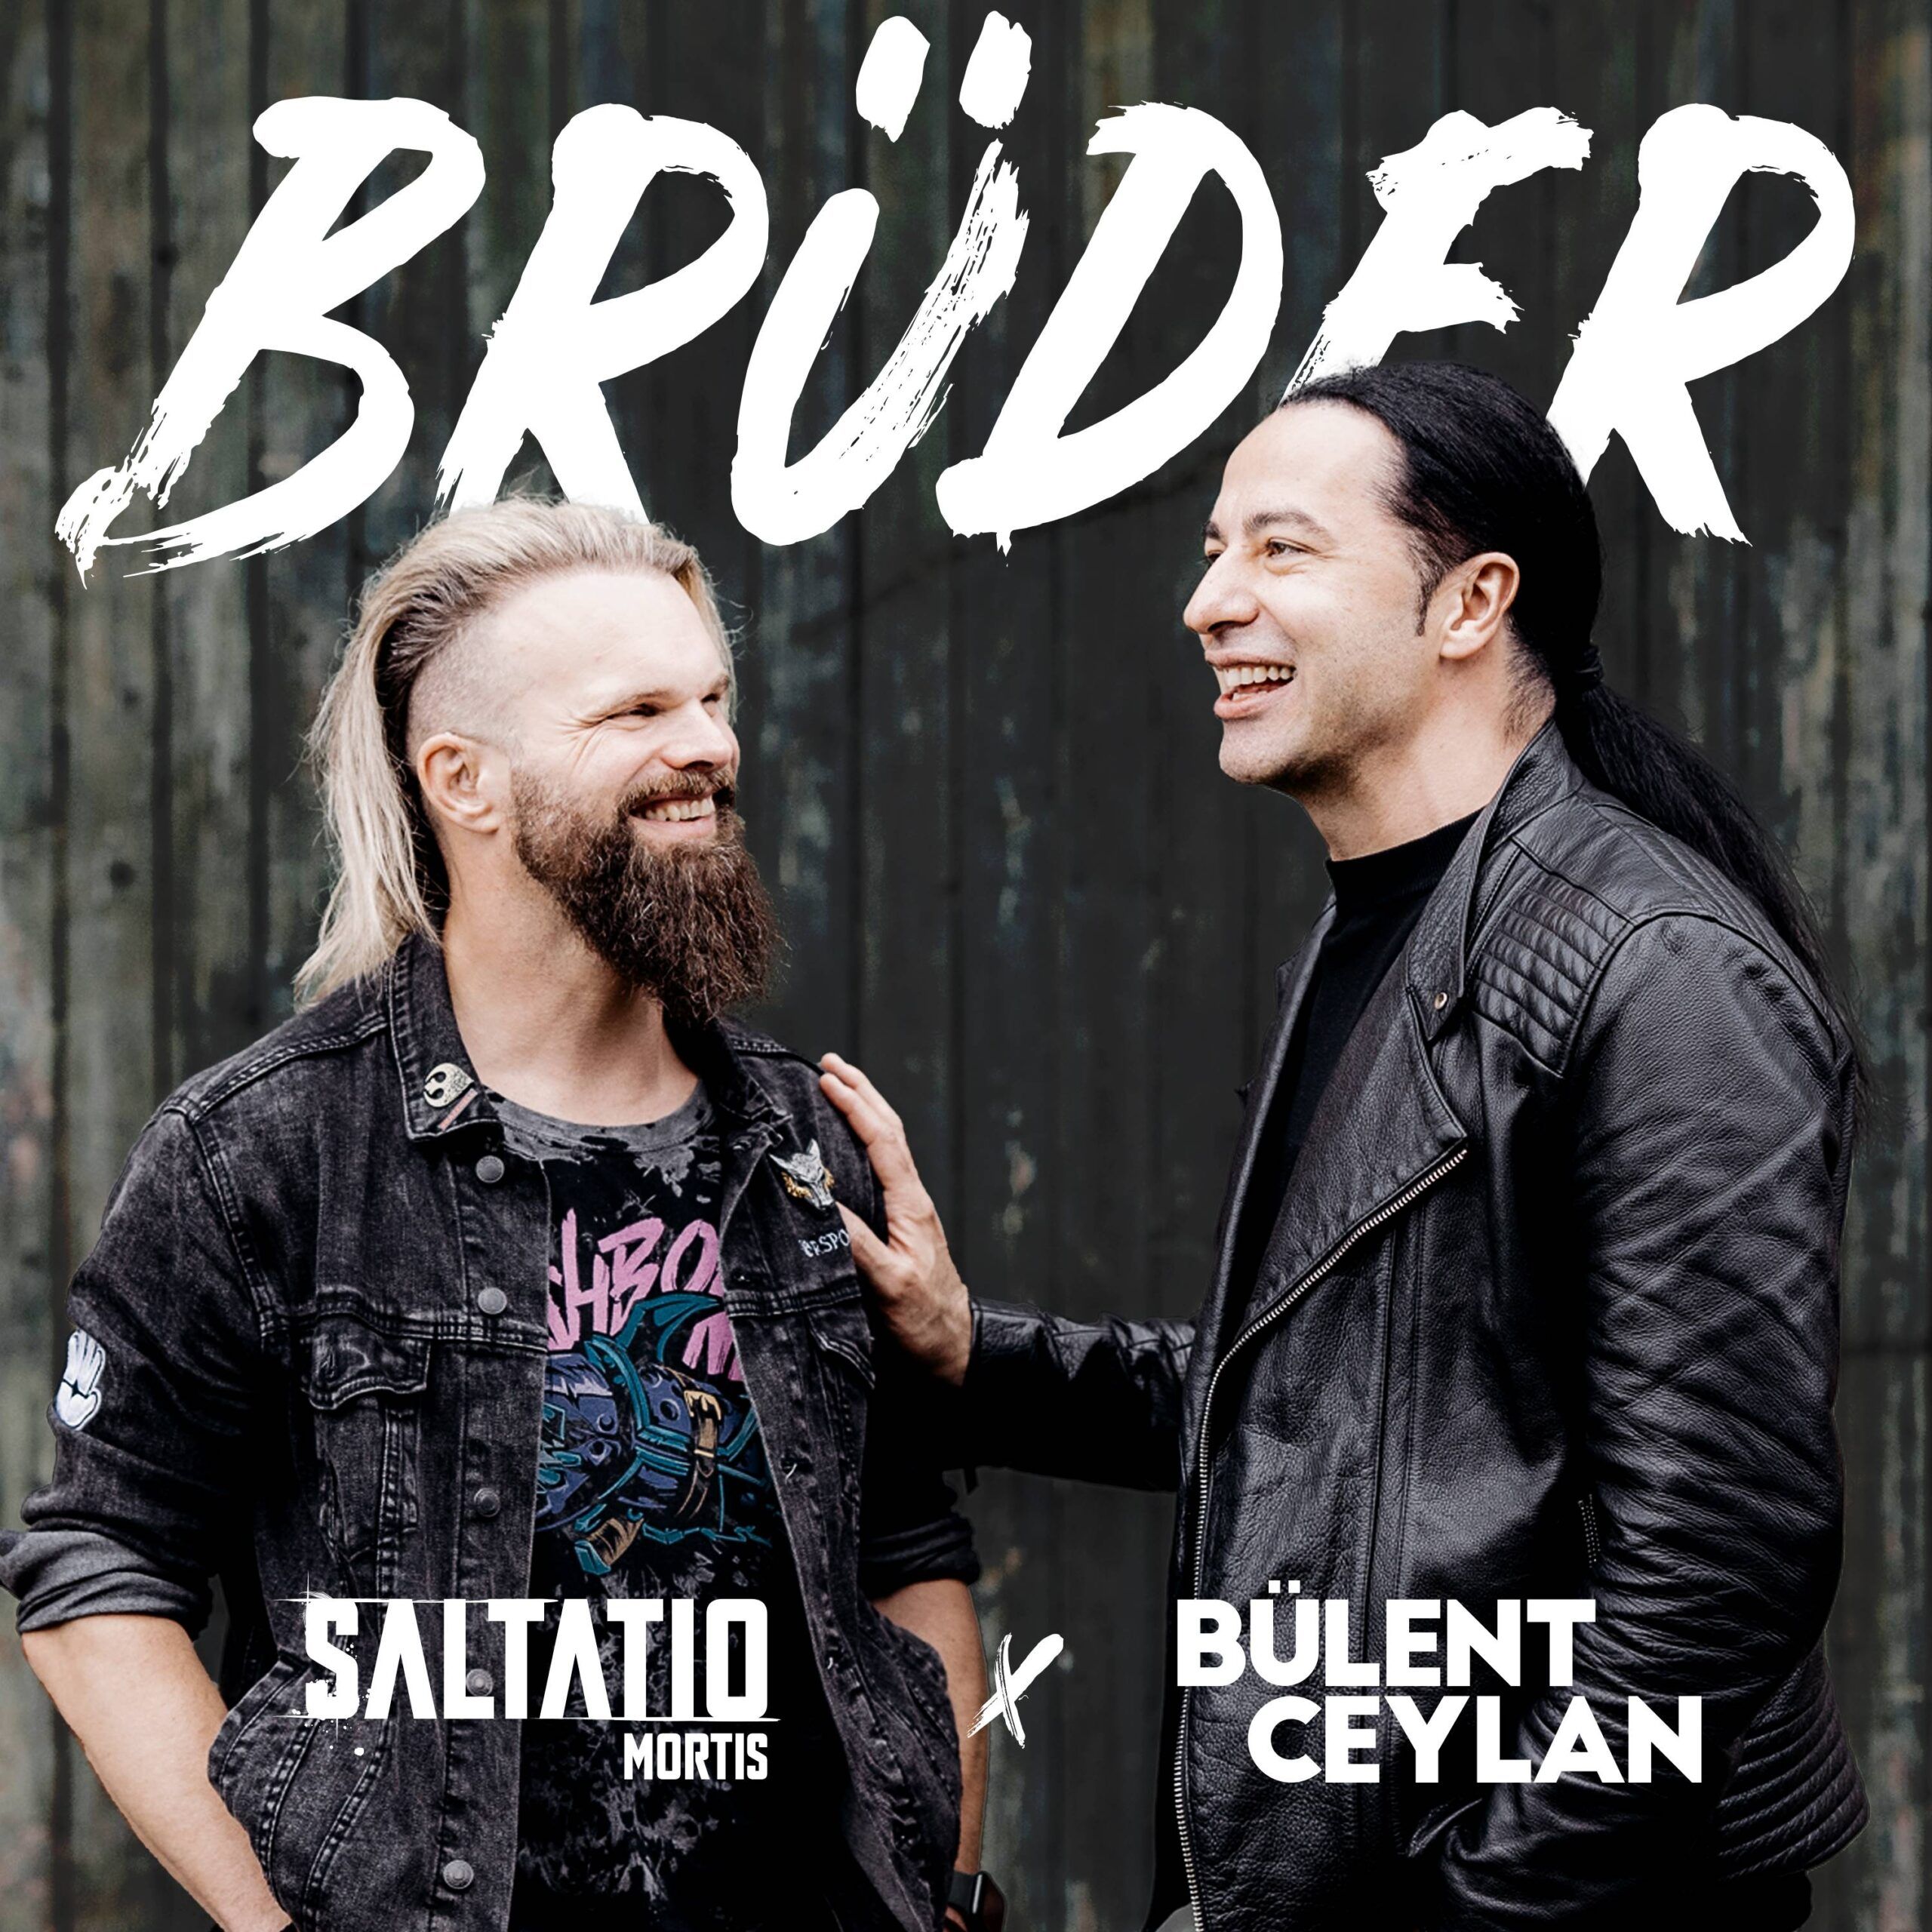 'Brüder'-Single mit Bülent Ceylan veröffentlicht